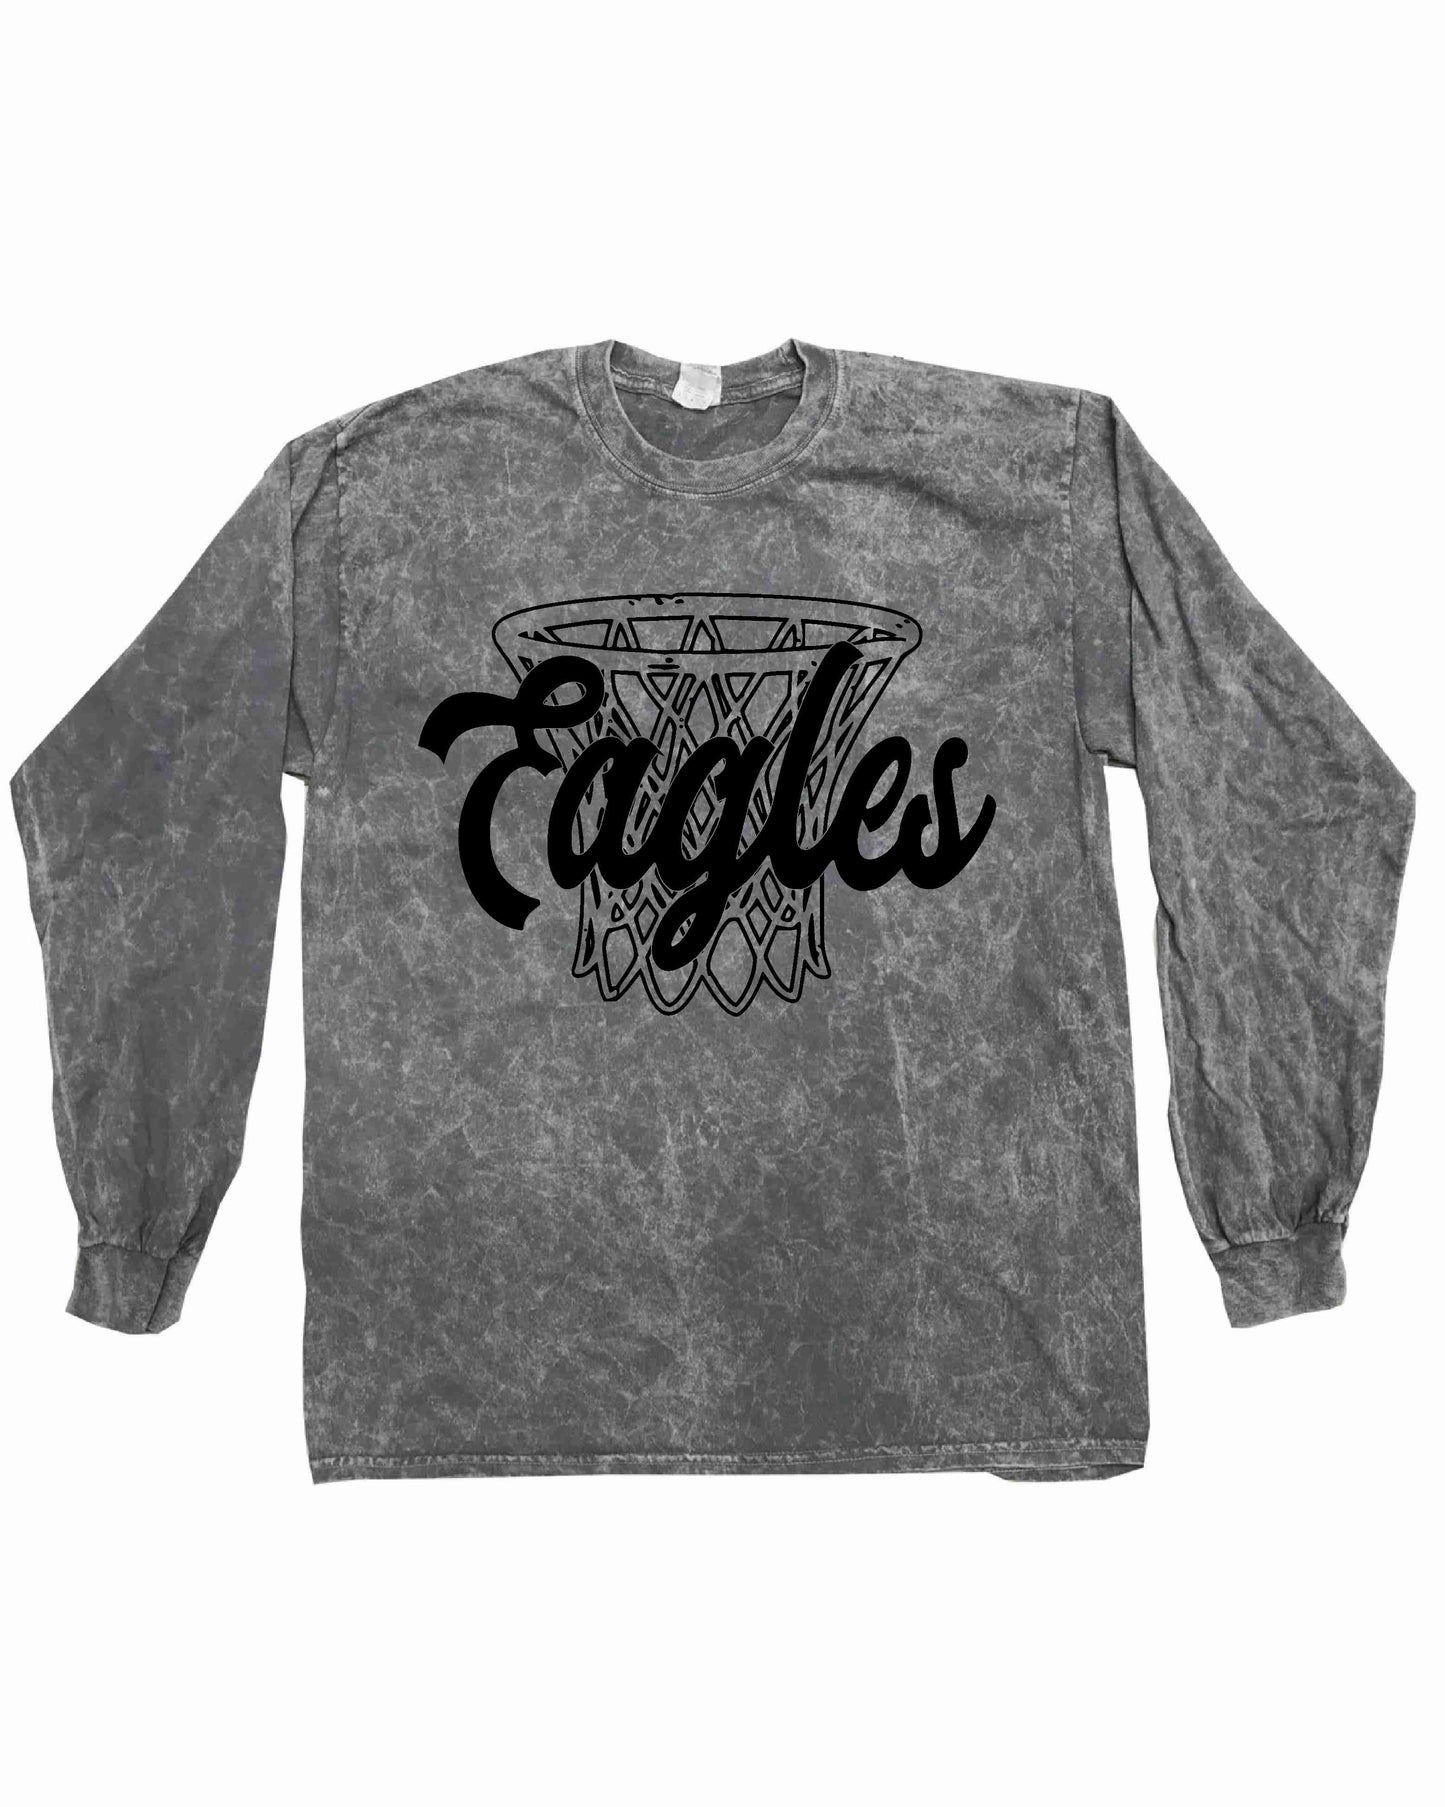 Eagles - Grunge Basketball Nets - Short & Long Sleeve